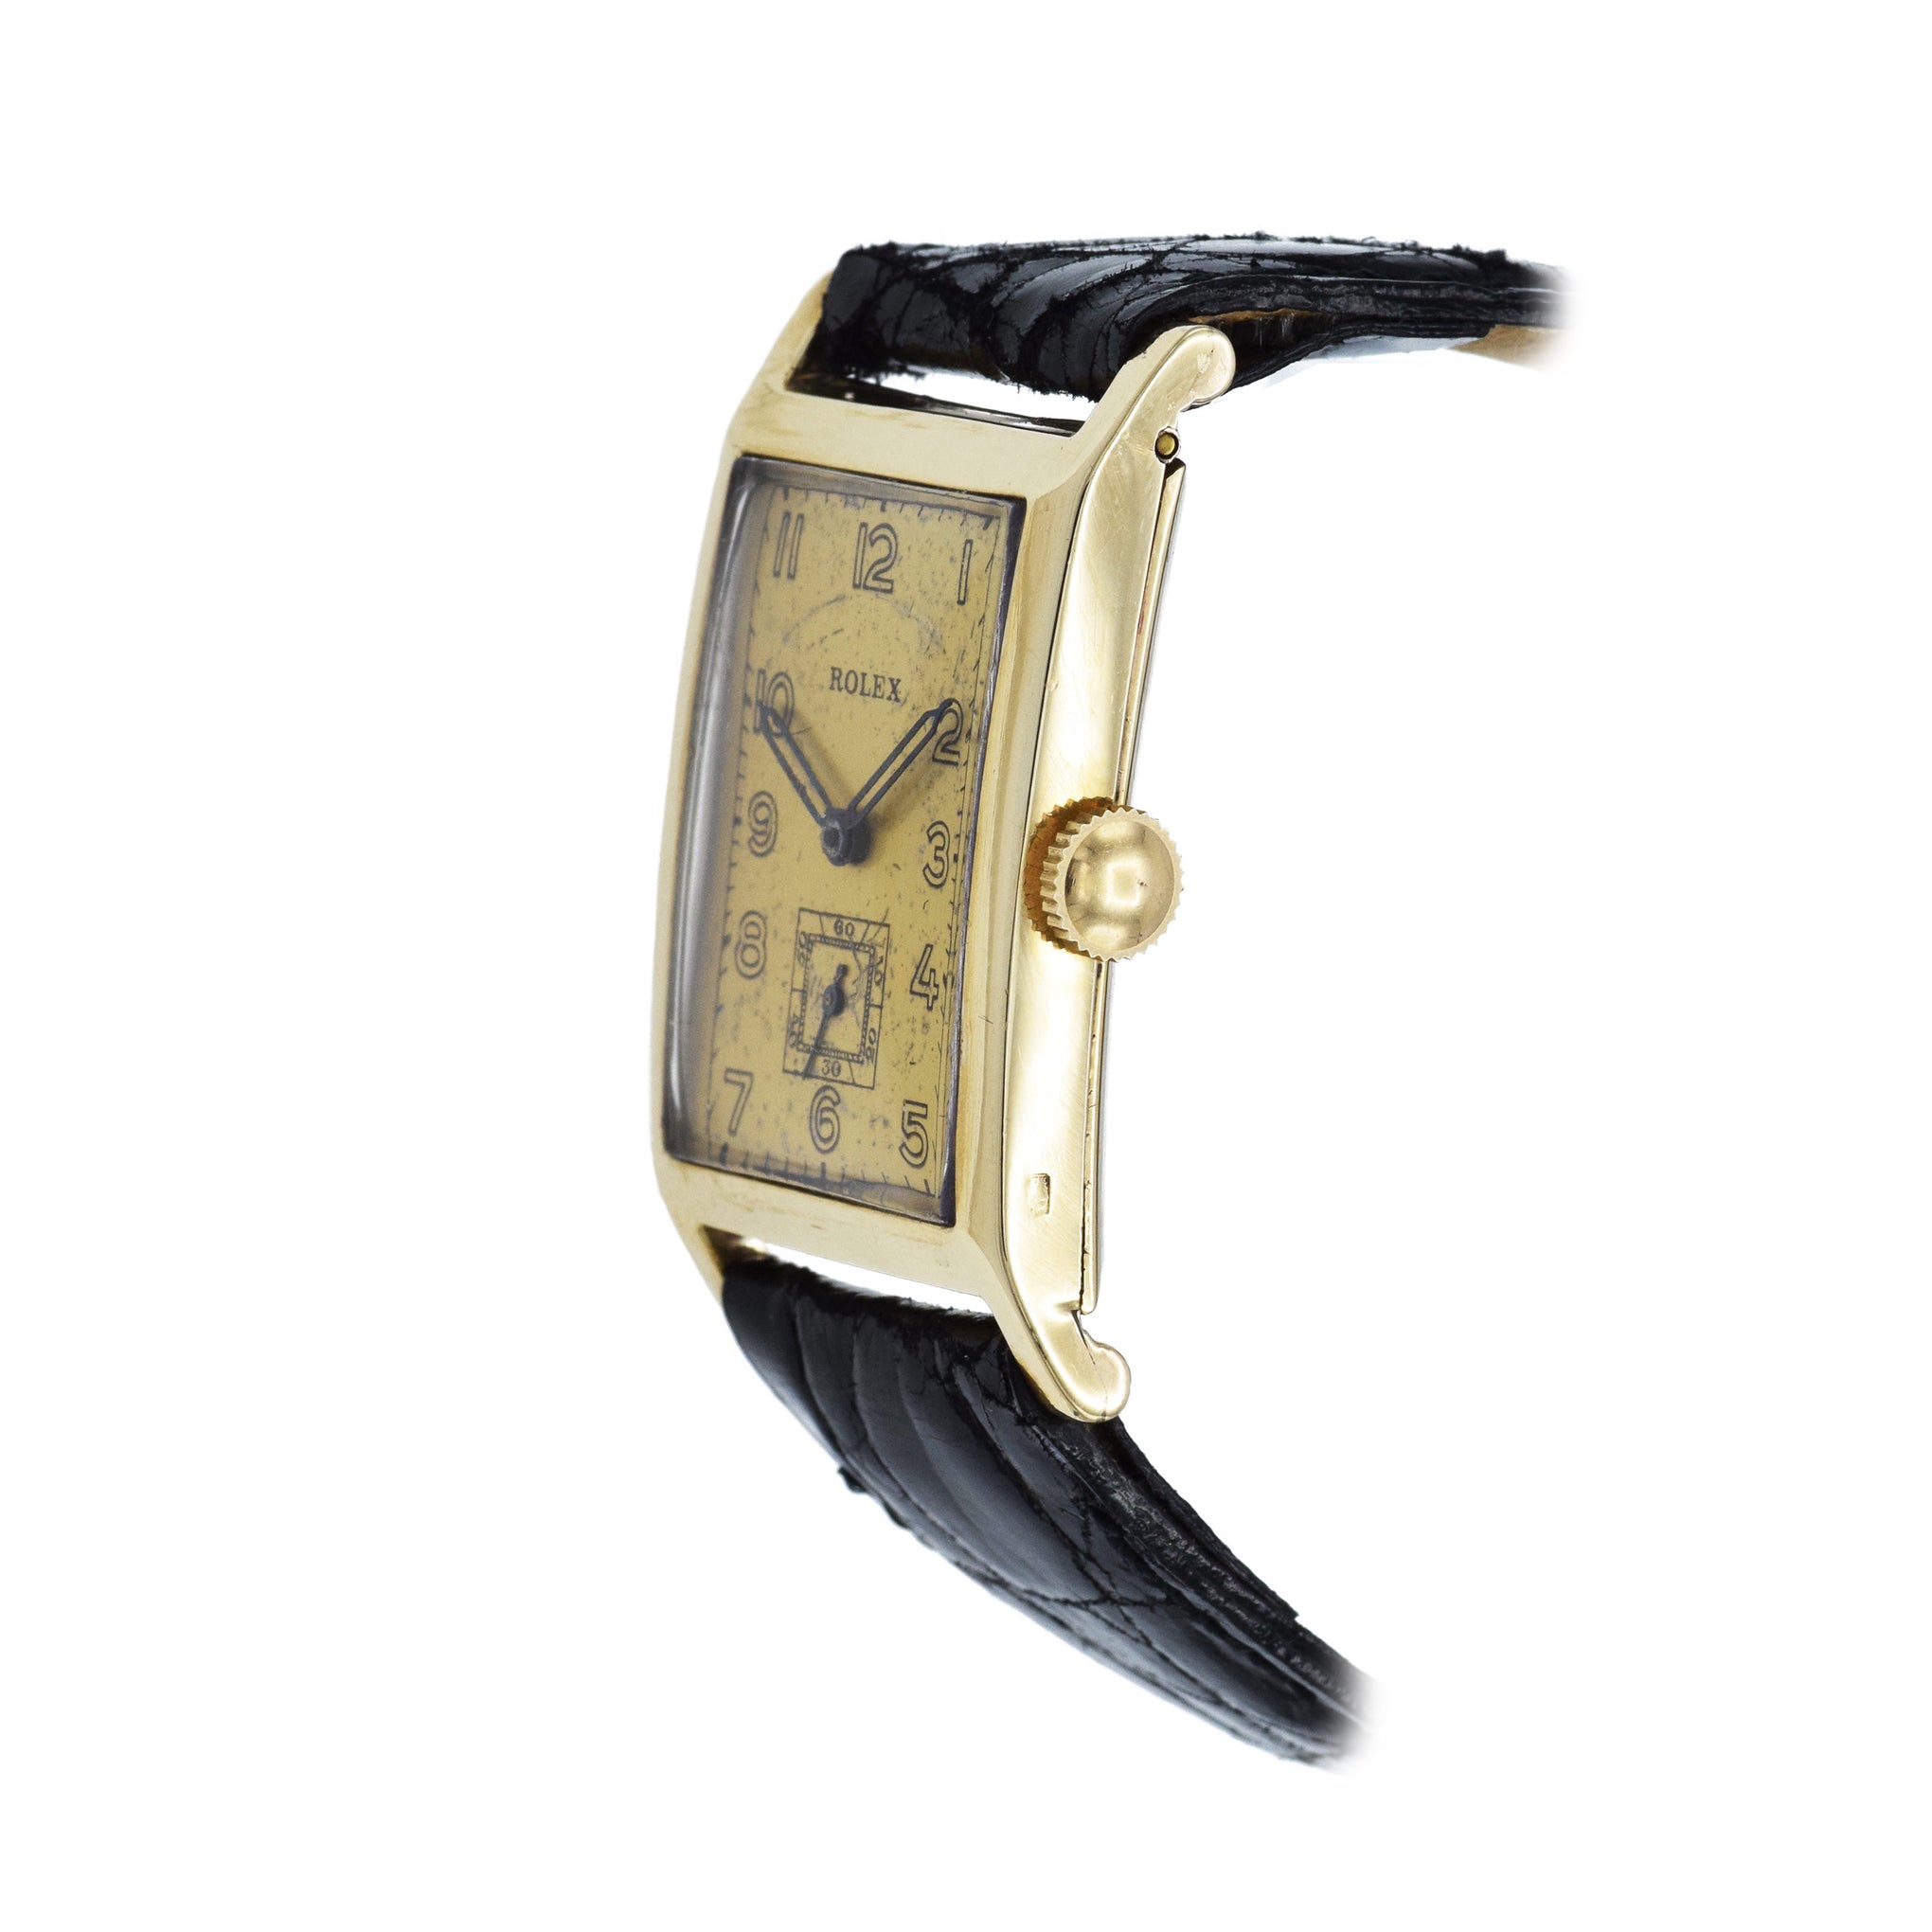 Vintage Rolex Watch c. 1933